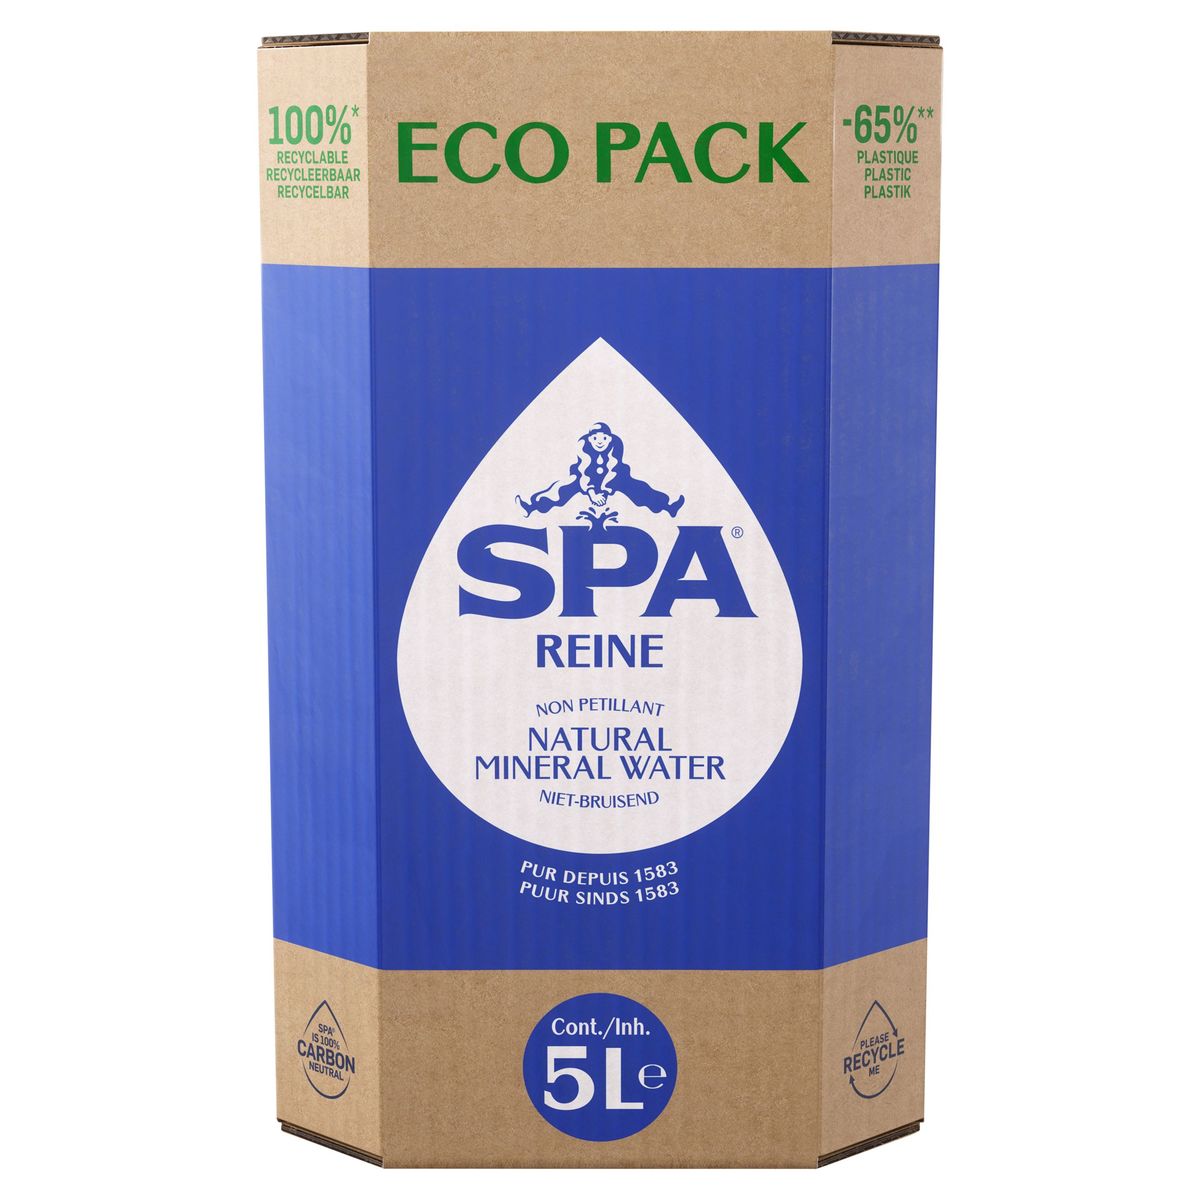 SPA REINE Eau Minérale Naturelle Eco Pack 5L